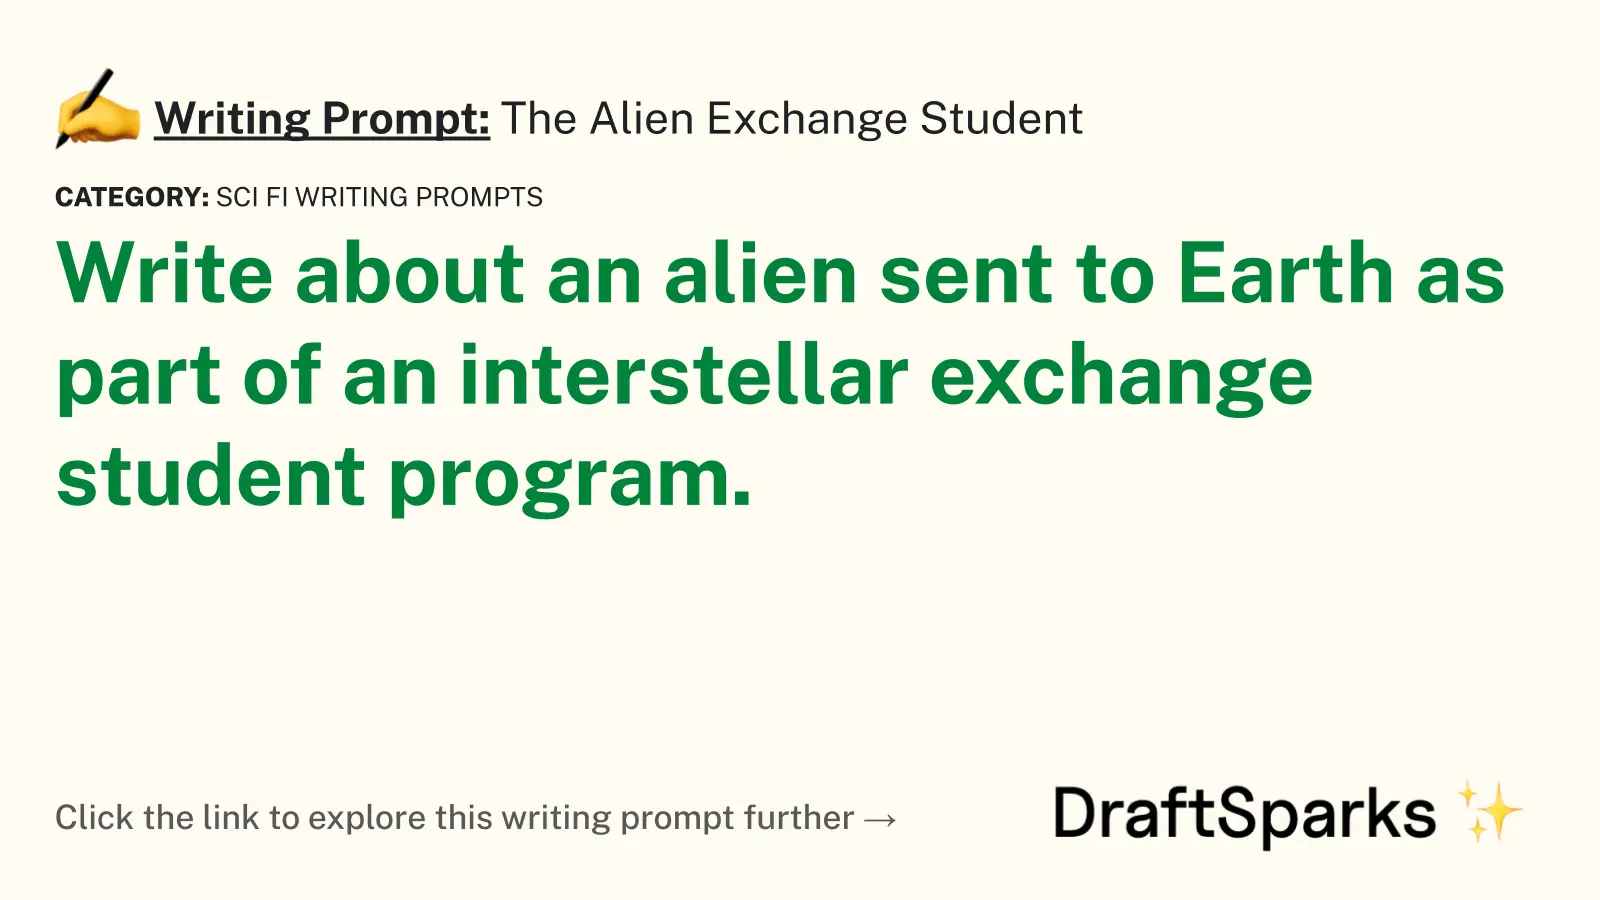 The Alien Exchange Student